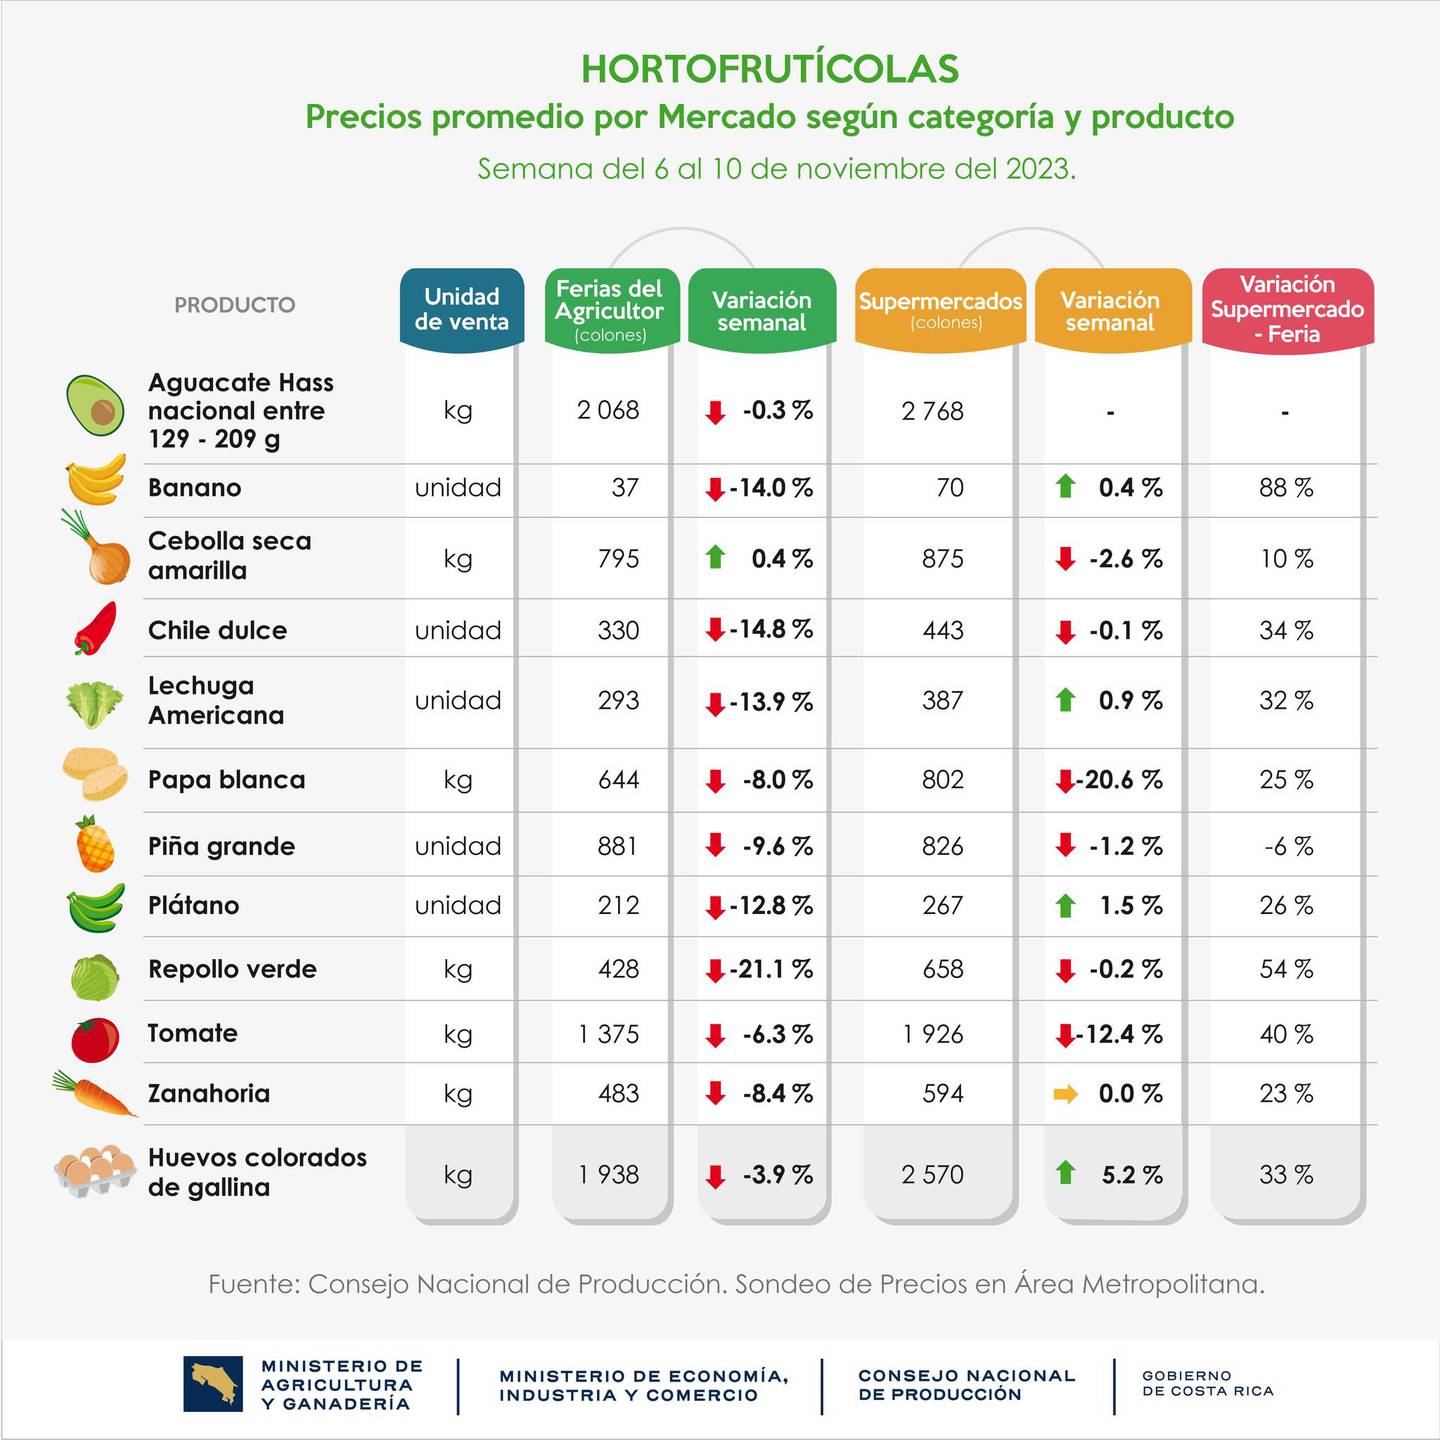 Comparación de precios hecho por el MEIC y el MAG entre carnicerías, las ferias del agricultor y supermercados para noviembre del 2023